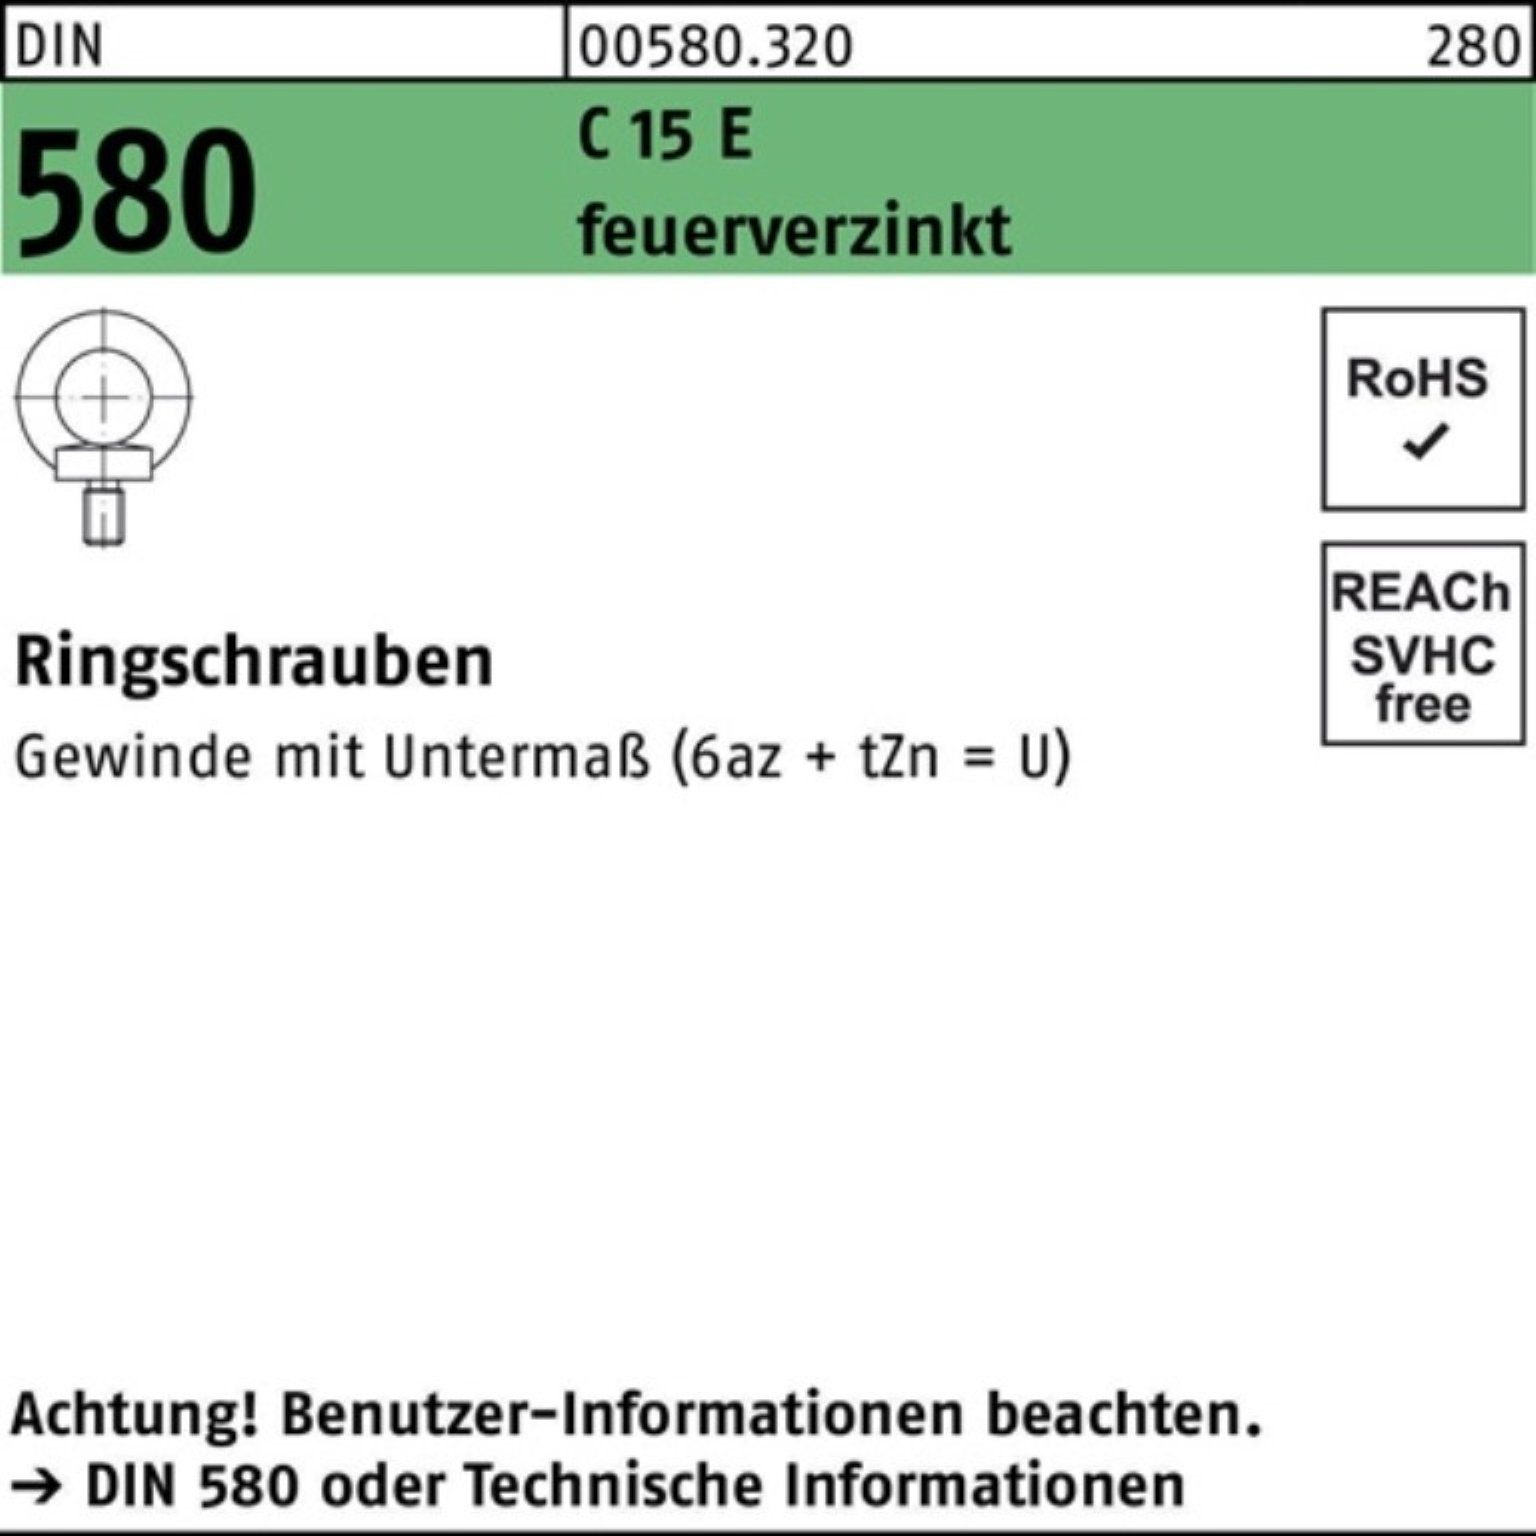 Reyher Schraube 100er Pack Ringschraube DIN 580 M24 C 15 E feuerverz. 1 Stück DIN 580